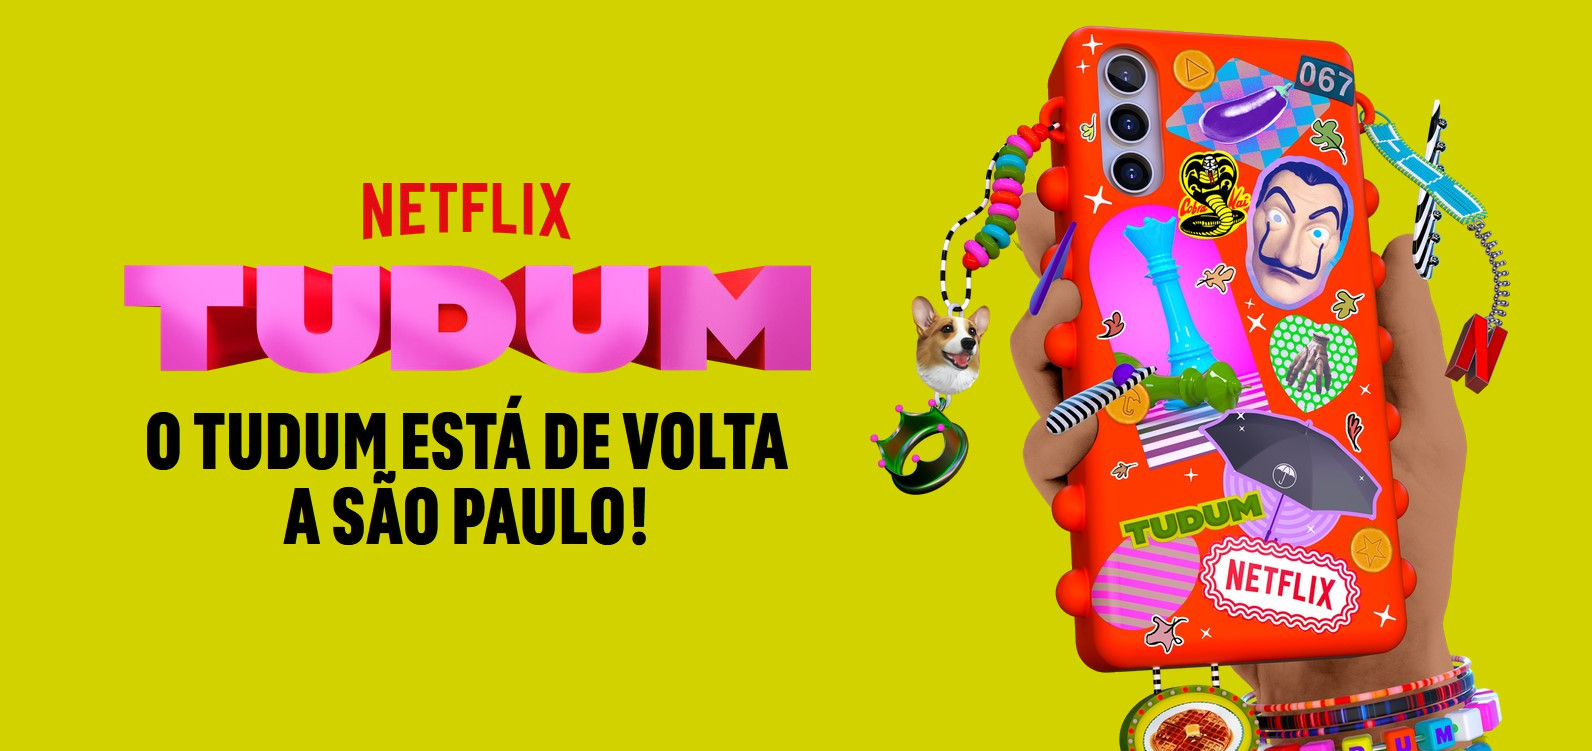 Banner do evento Tudum, da Netflix, acompanhado do texto: Netflix Tudum - o tudum está de volta a São Paulo!